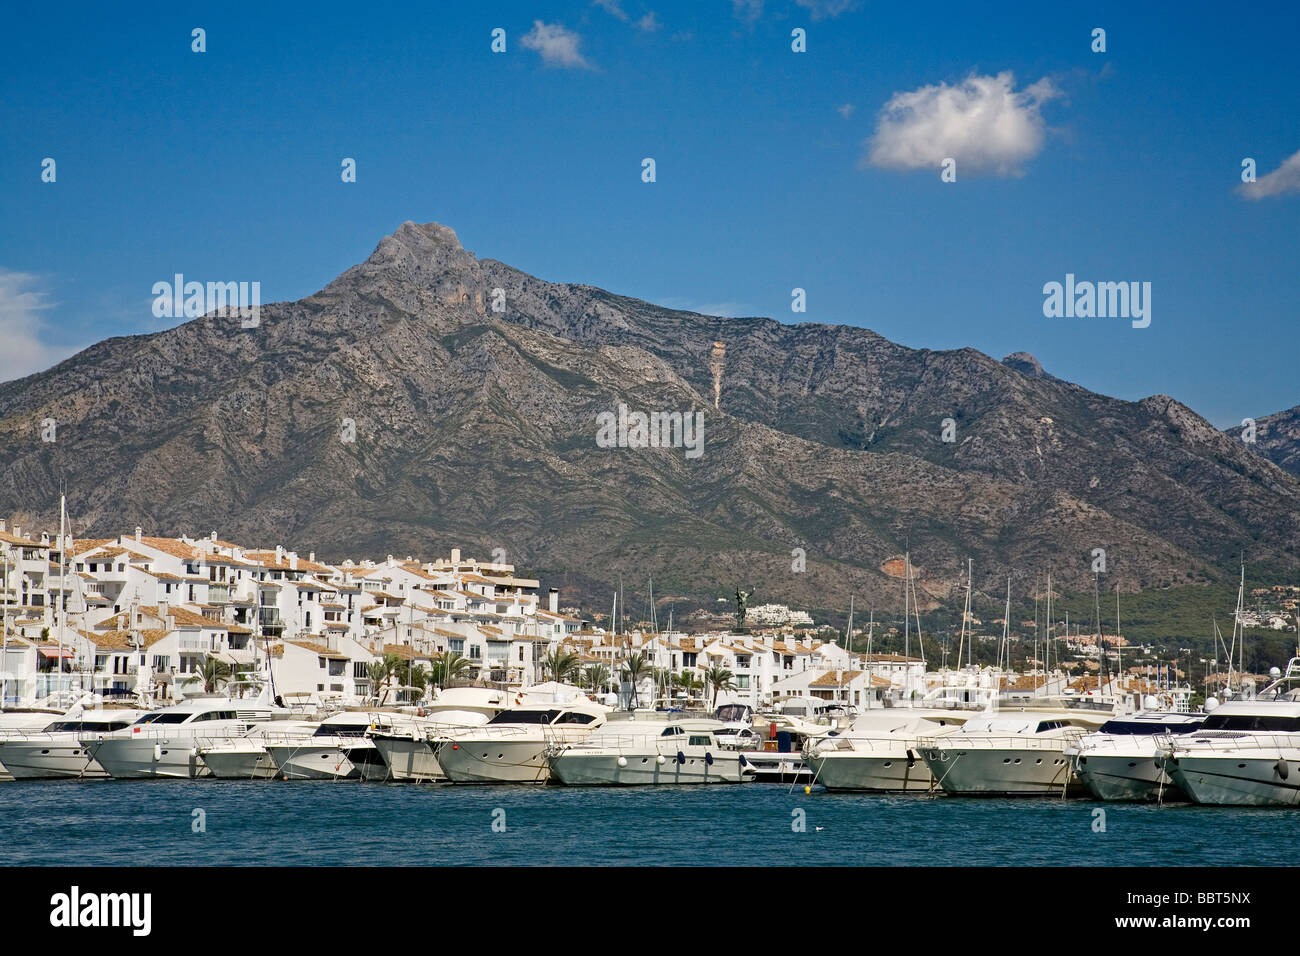 Jose Banus Marina in Marbella Malaga Sun Coast Andalusia Spain Stock Photo